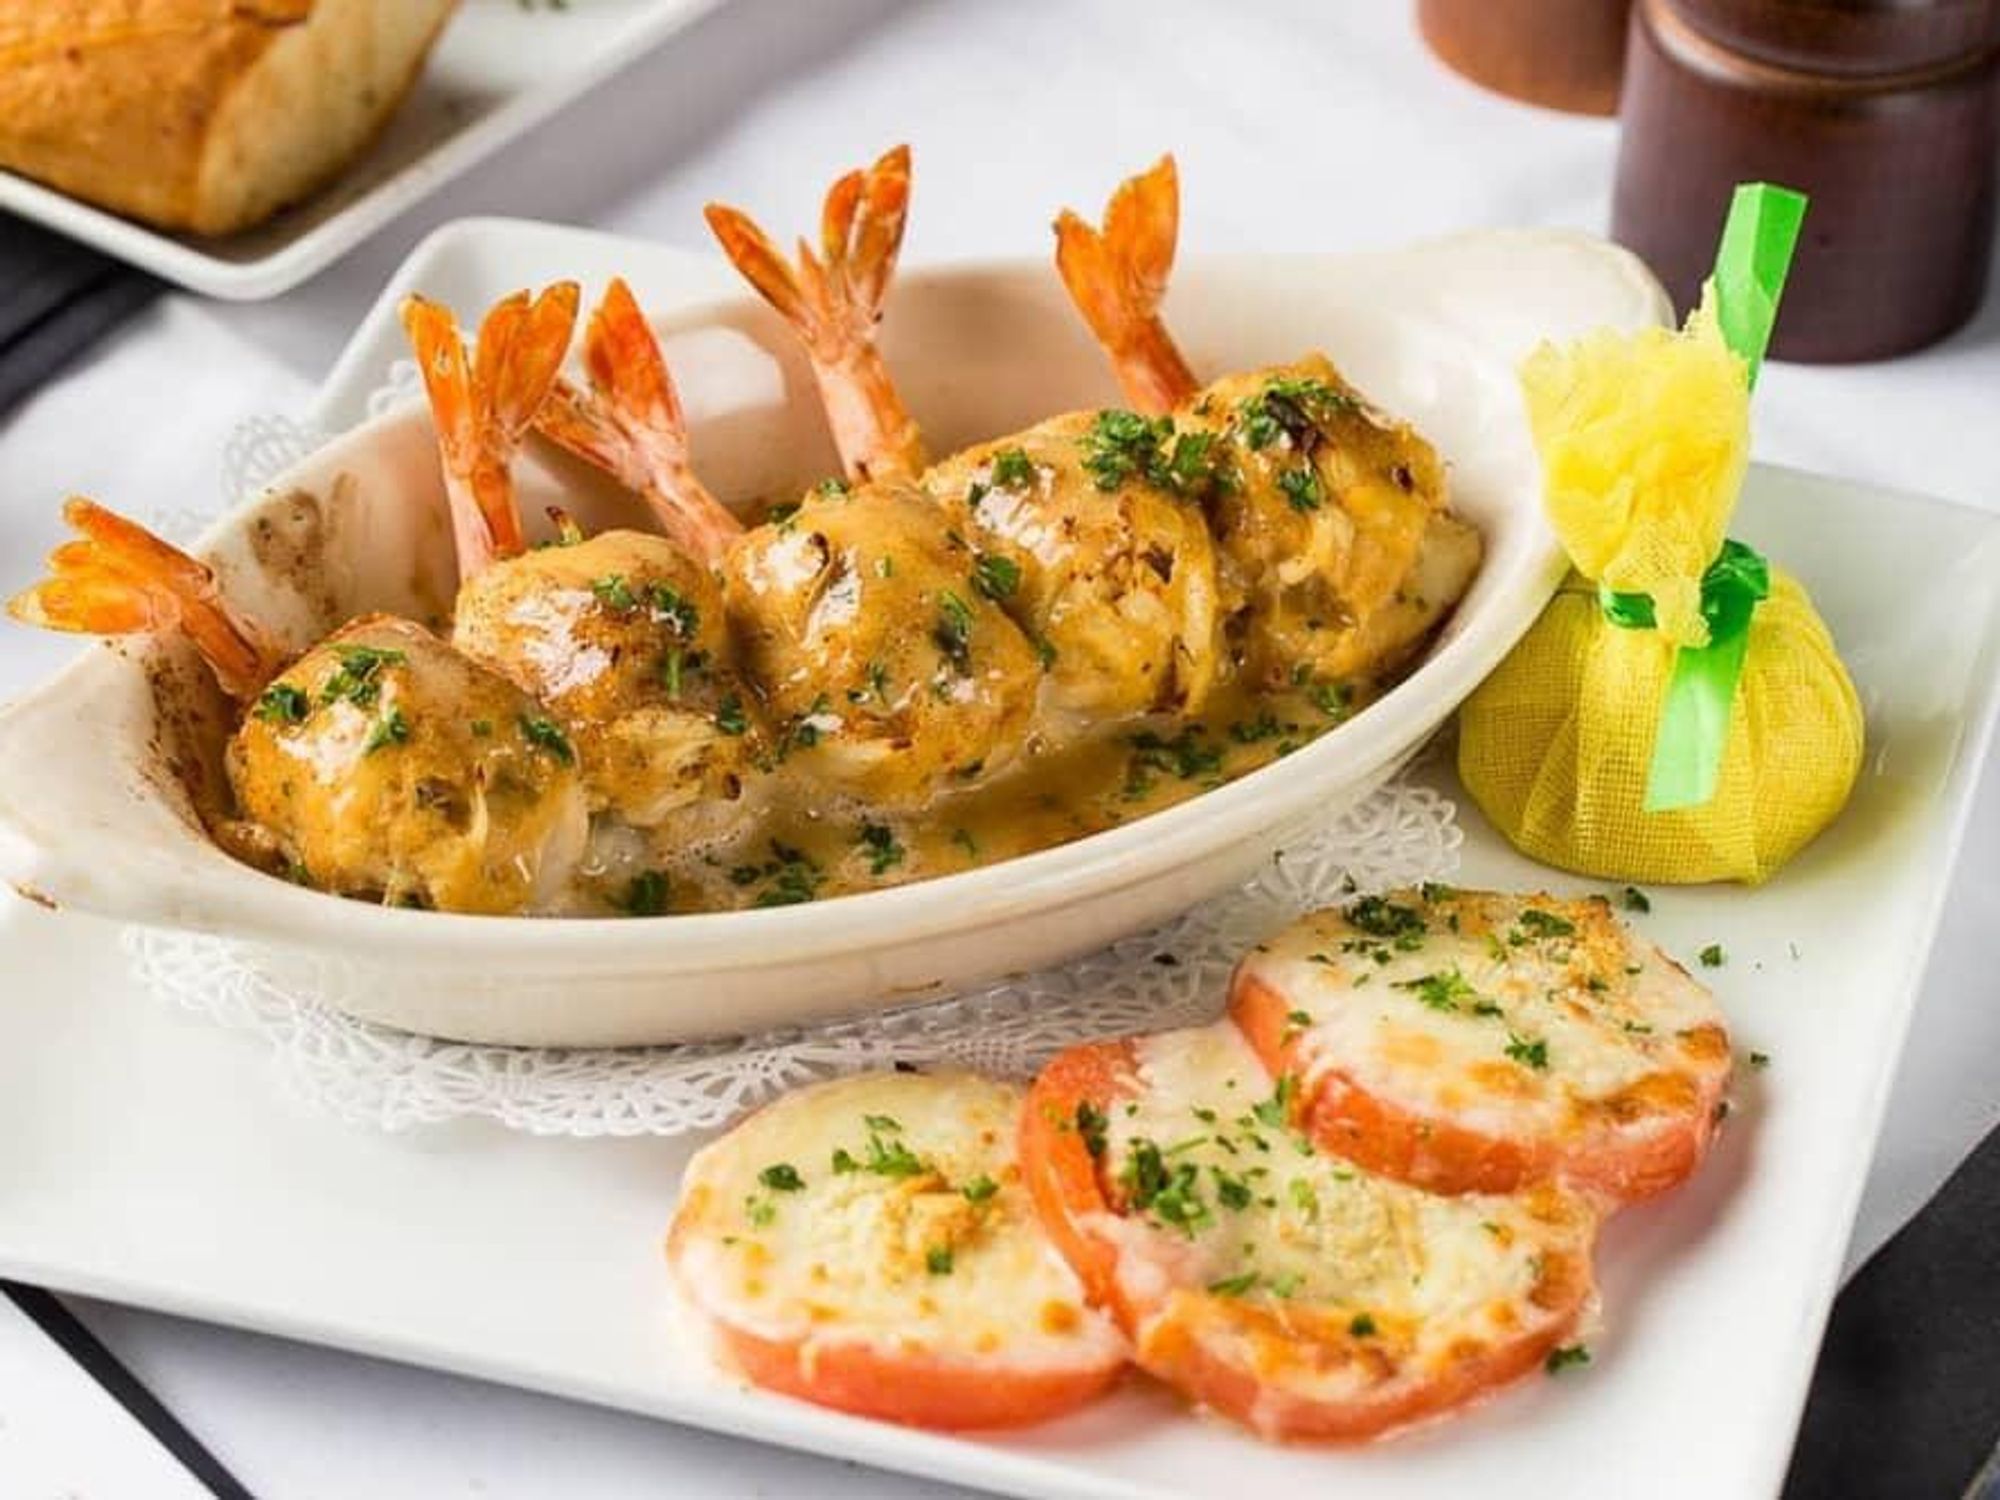 Gaido's shrimp dish stuffed shrimp